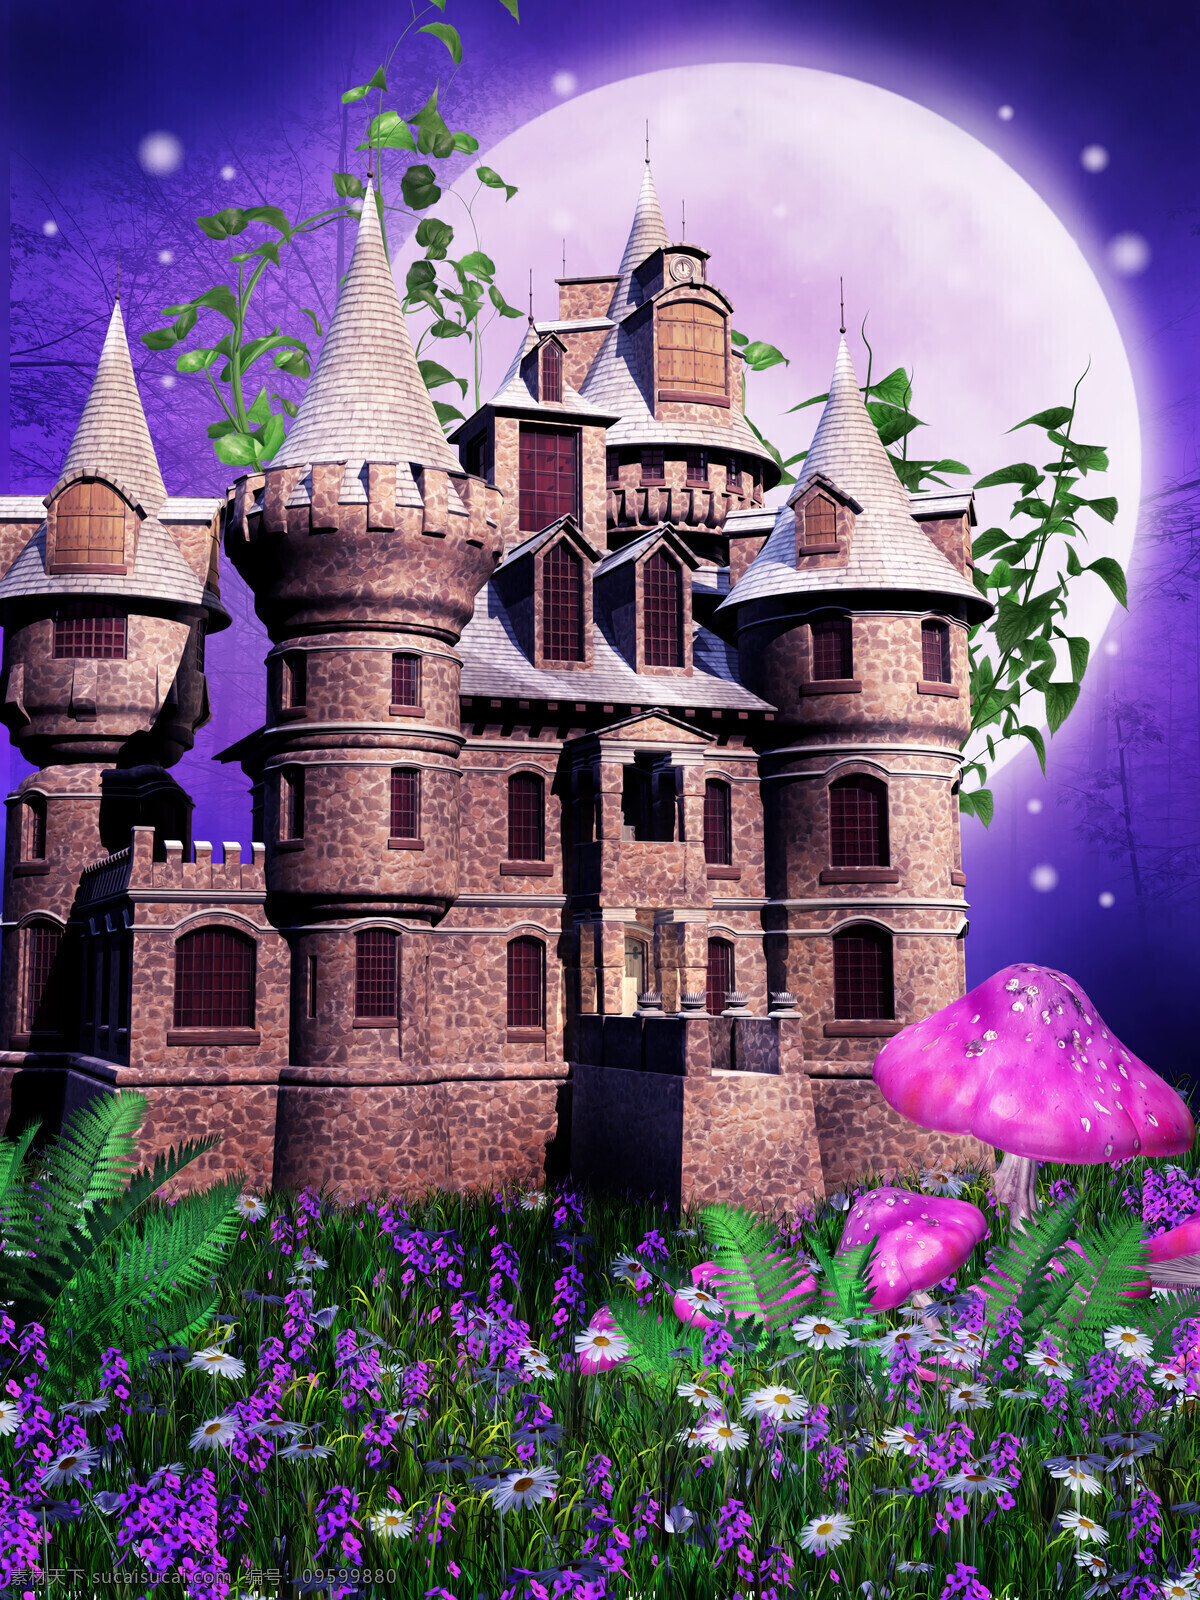 美丽 城堡 风景 城堡风景 蘑菇 月亮 月色 鲜花草地 花朵 梦幻景色 梦境 美丽风景 梦幻背景 城堡图片 风景图片